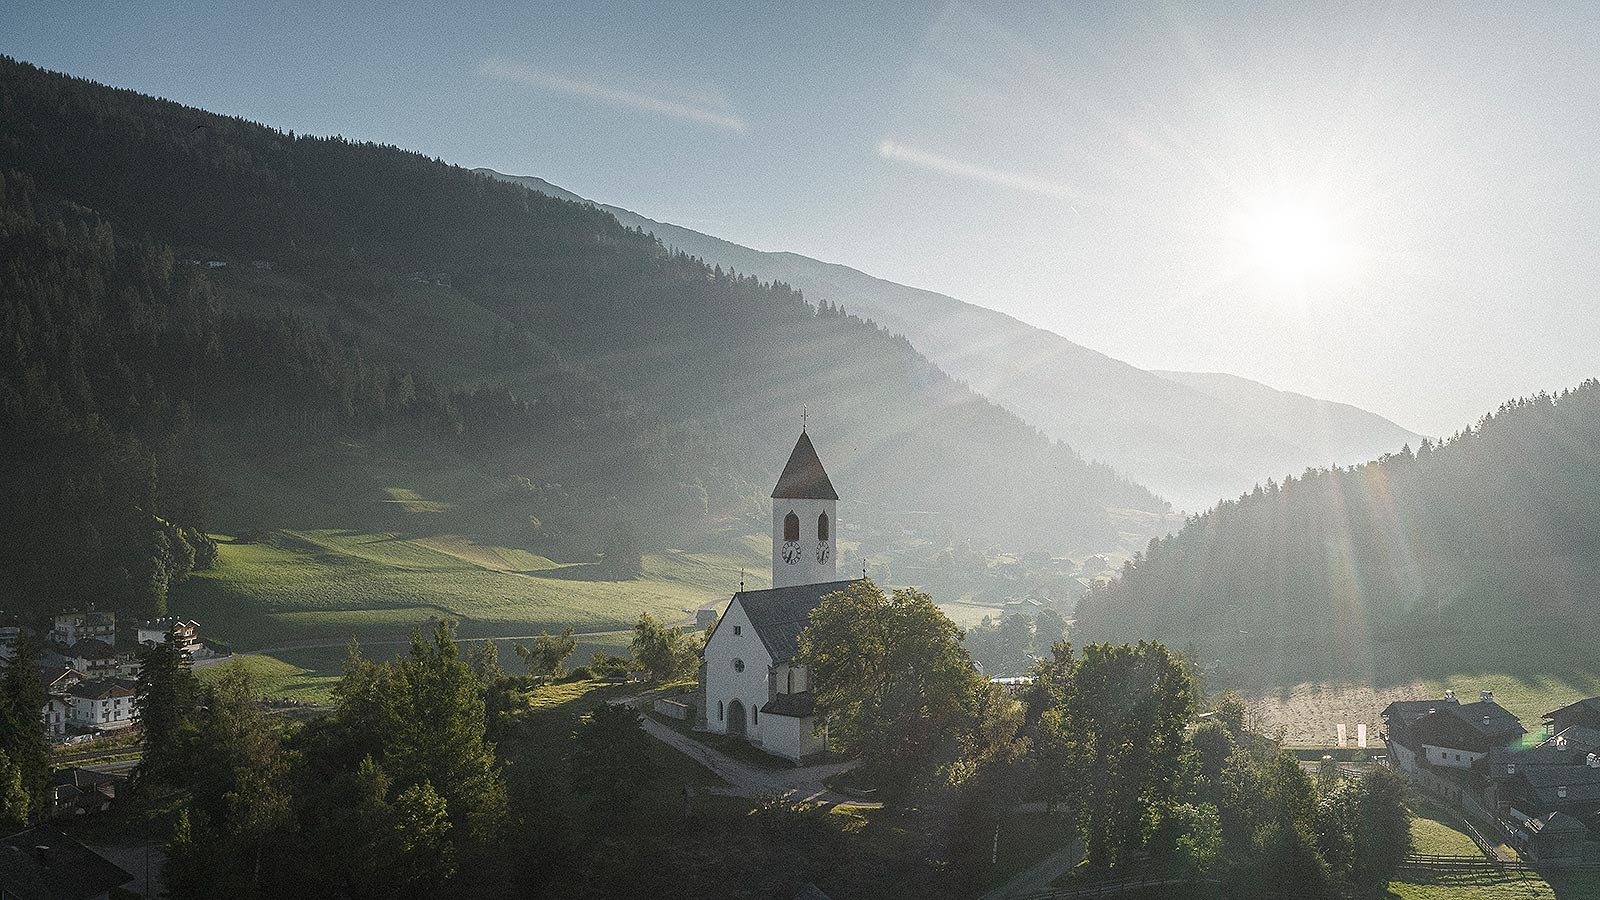 Piccola chiesa bianca col campanile in mezzo alle colline della Val Pusteria illuminata dal sole nel tardo pomeriggio.